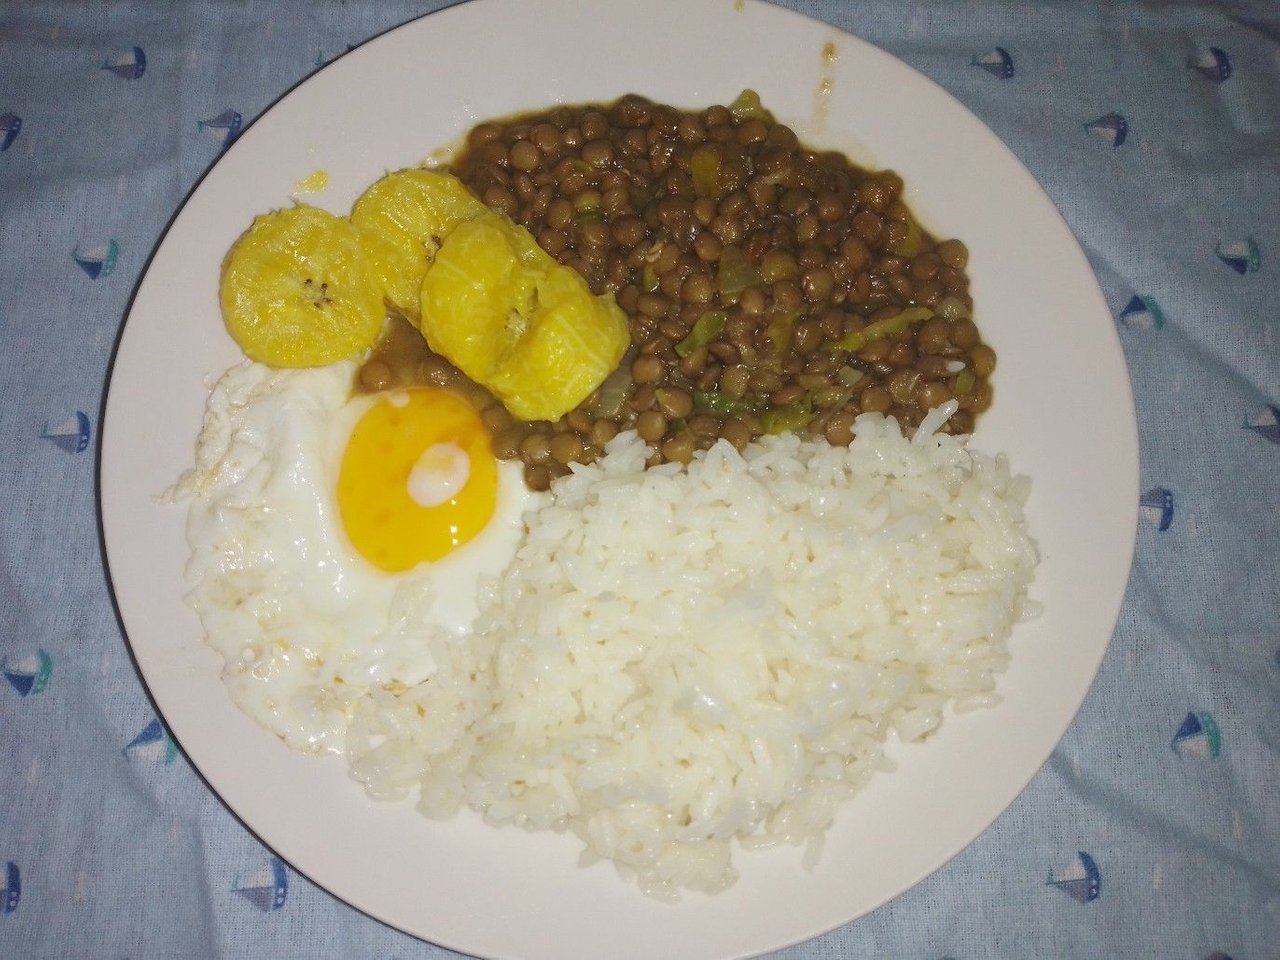 ESP - ENG] Mi delicioso y sencillo amuerzo de hoy: arroz, con lentejas  guisadas, huevo frito y plátano maduro sancochado! | PeakD